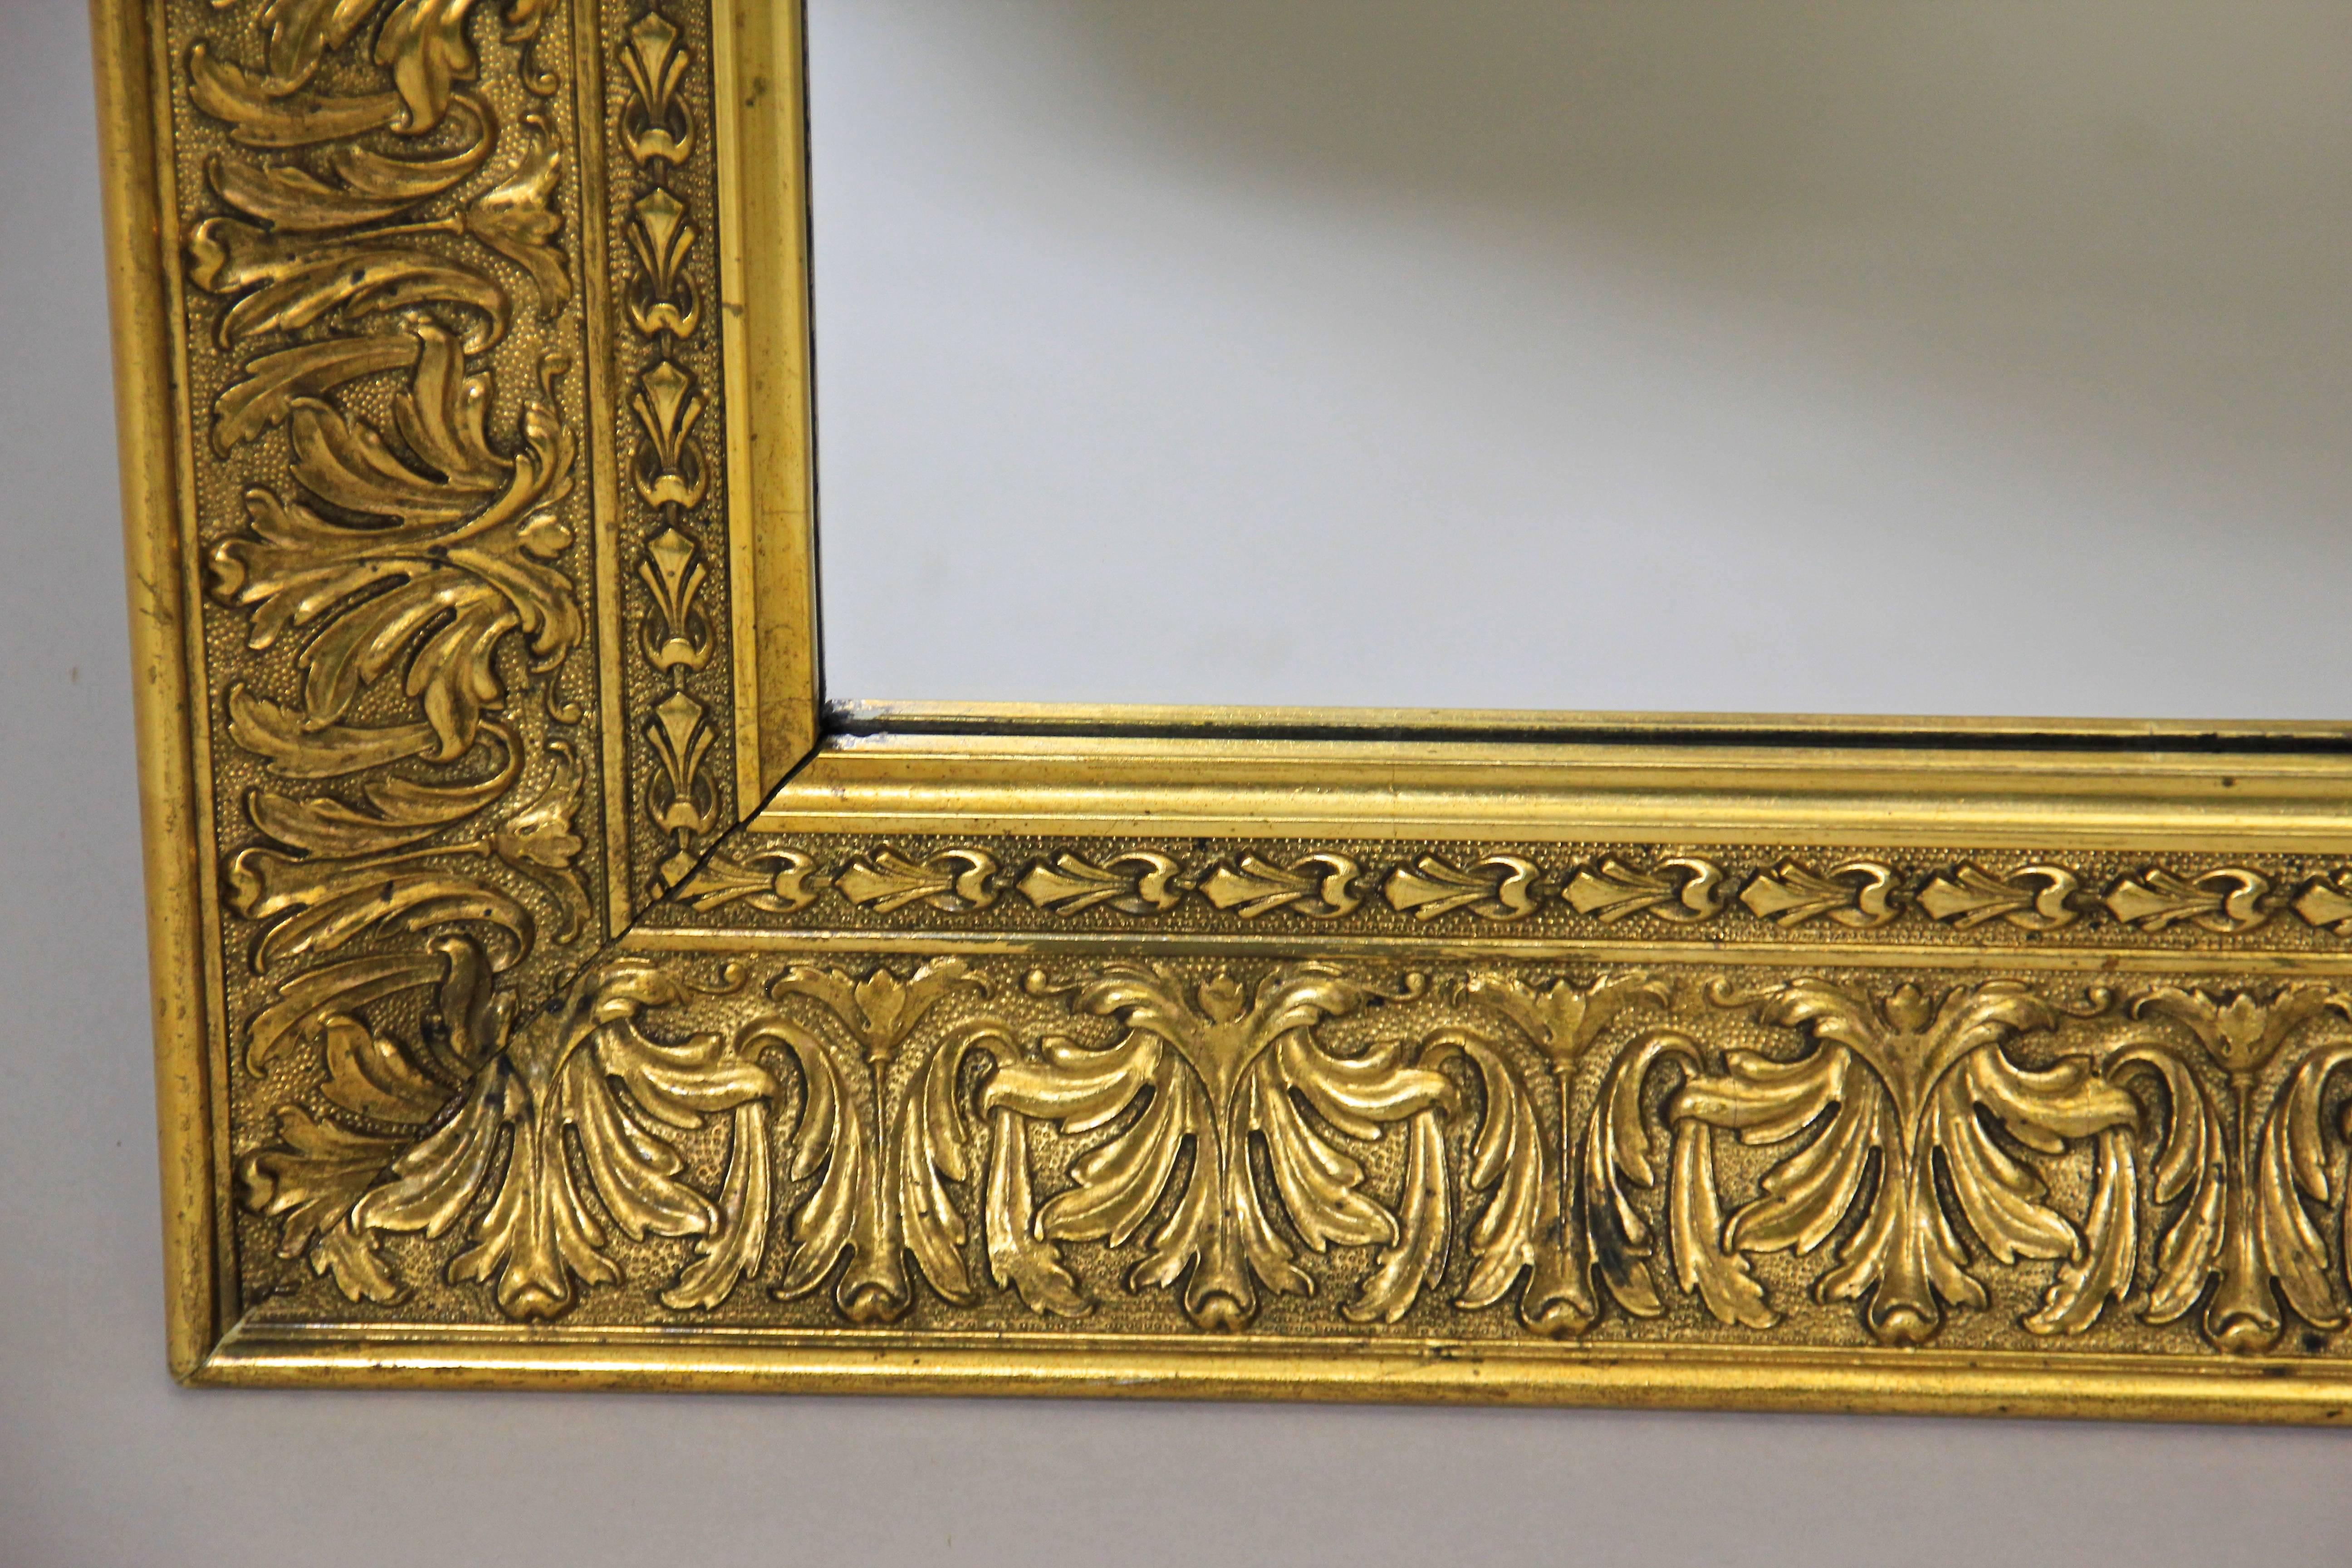 Baroque Revival Elegant Large Golden Mirror, Austria, circa 1900